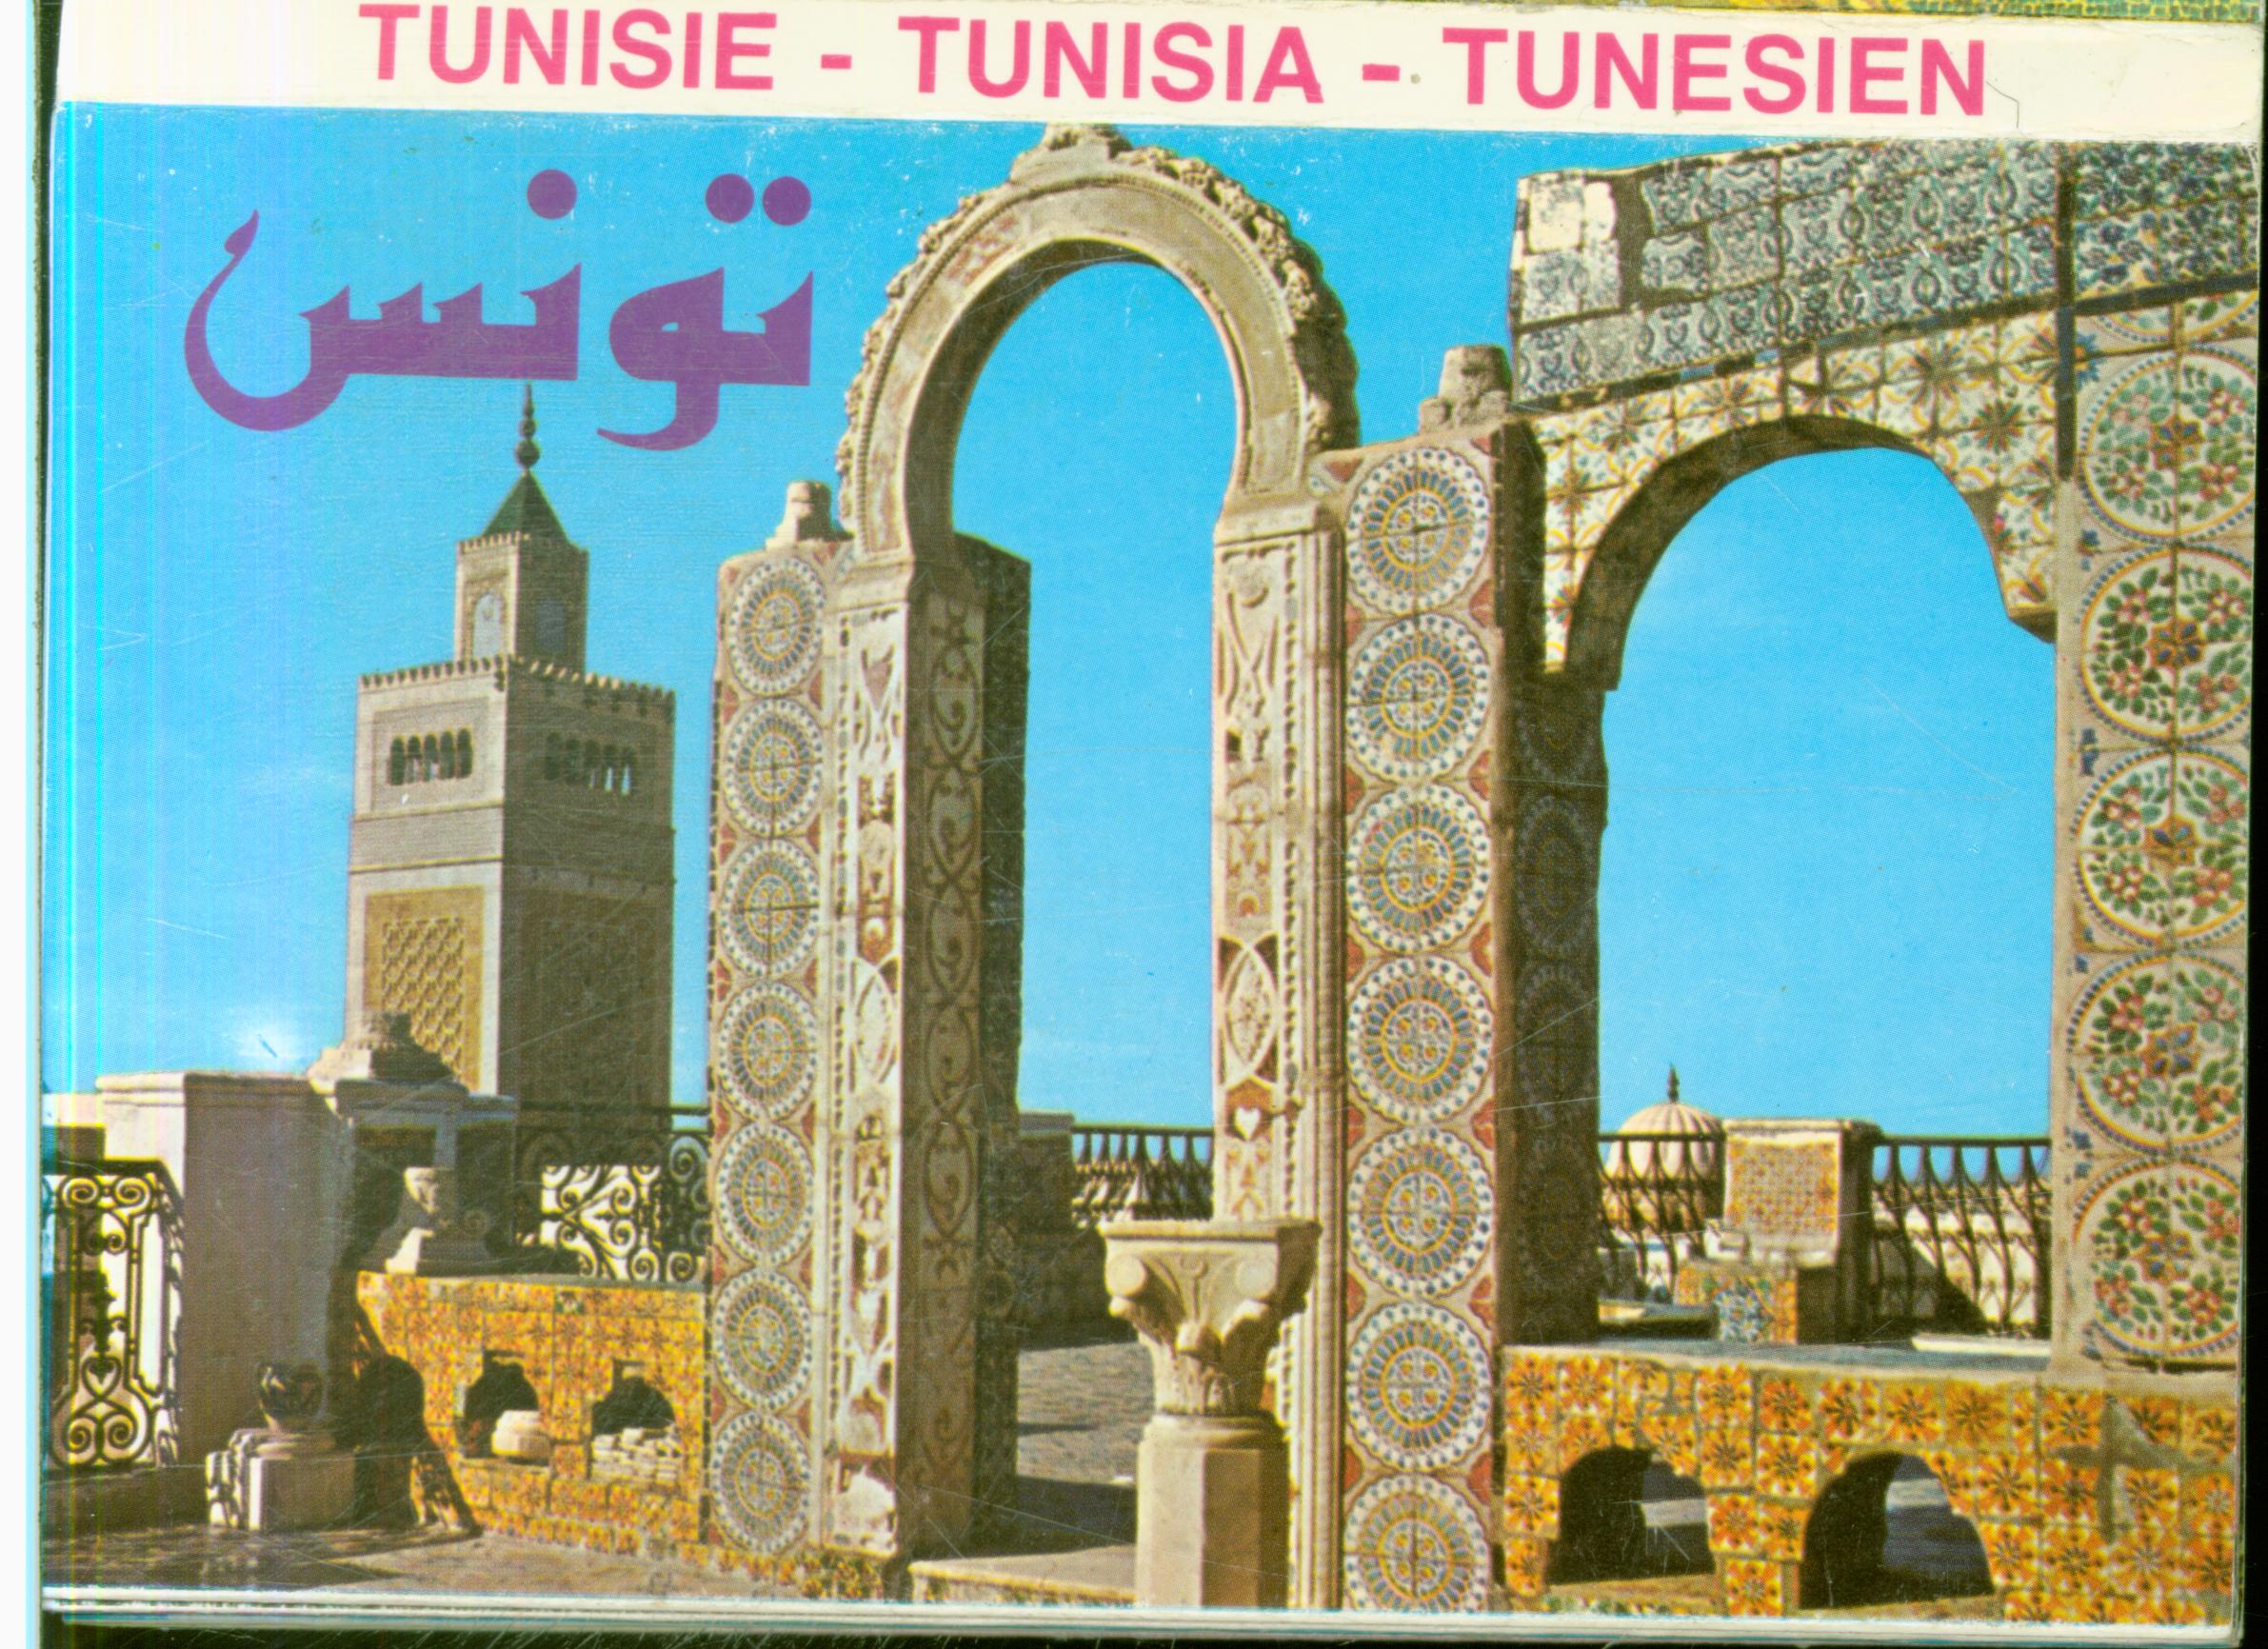 Cartes postales anciennes > CARTES POSTALES > carte postale ancienne > cartes-postales-ancienne.com Lots cartes postales Tunisie